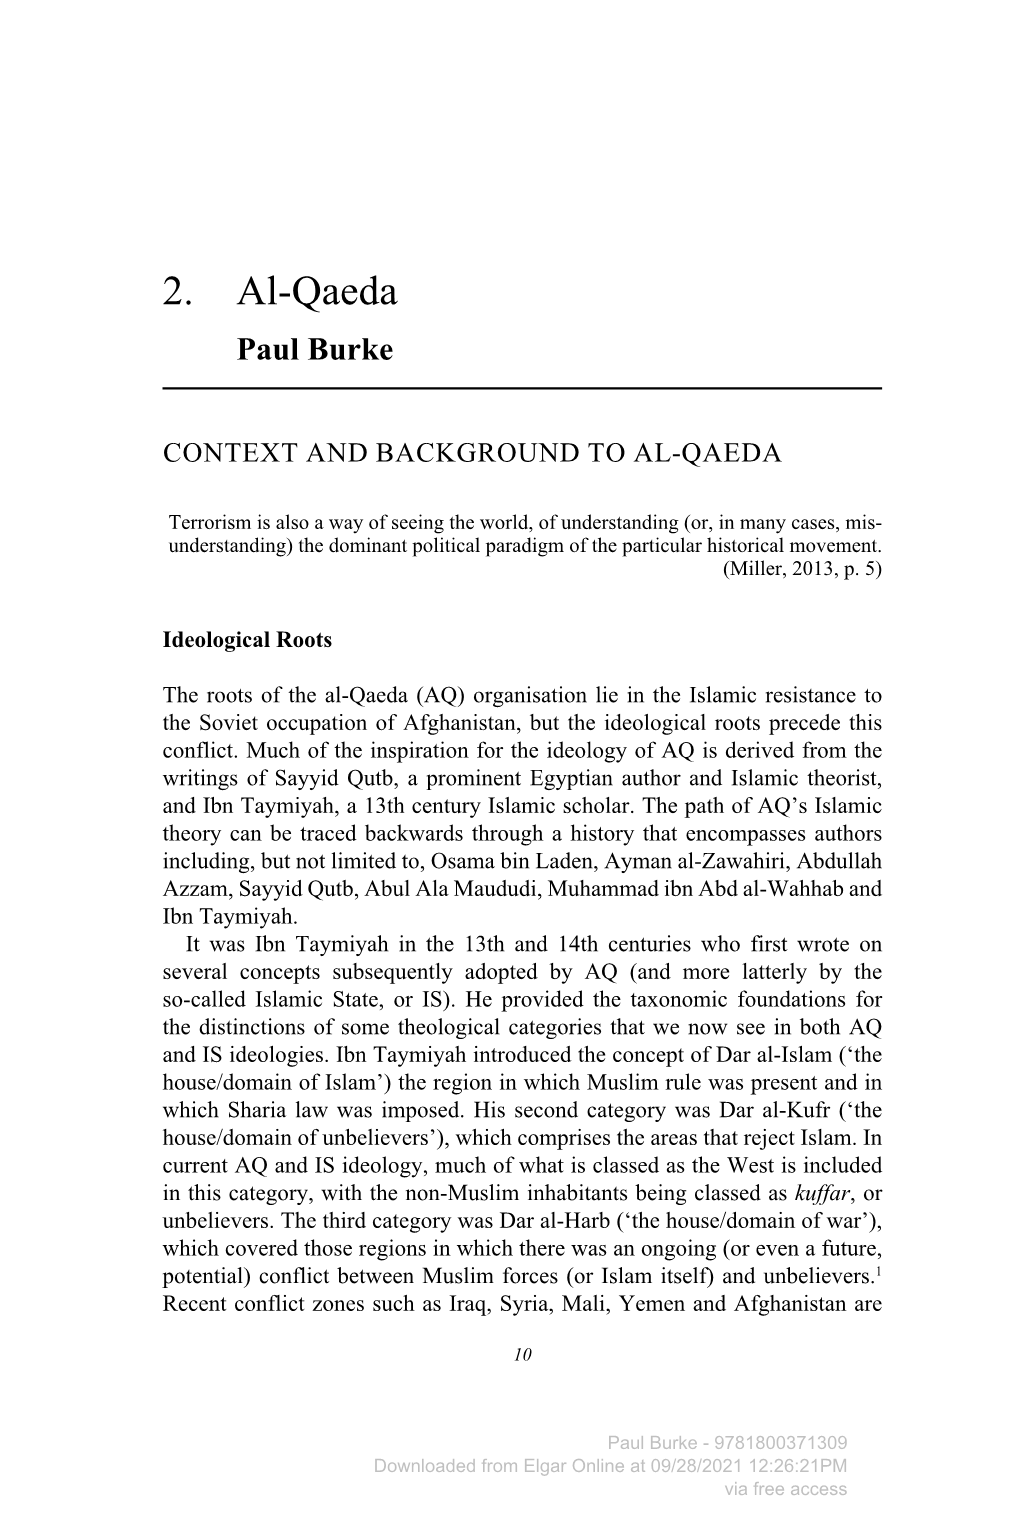 2. Al-Qaeda Paul Burke